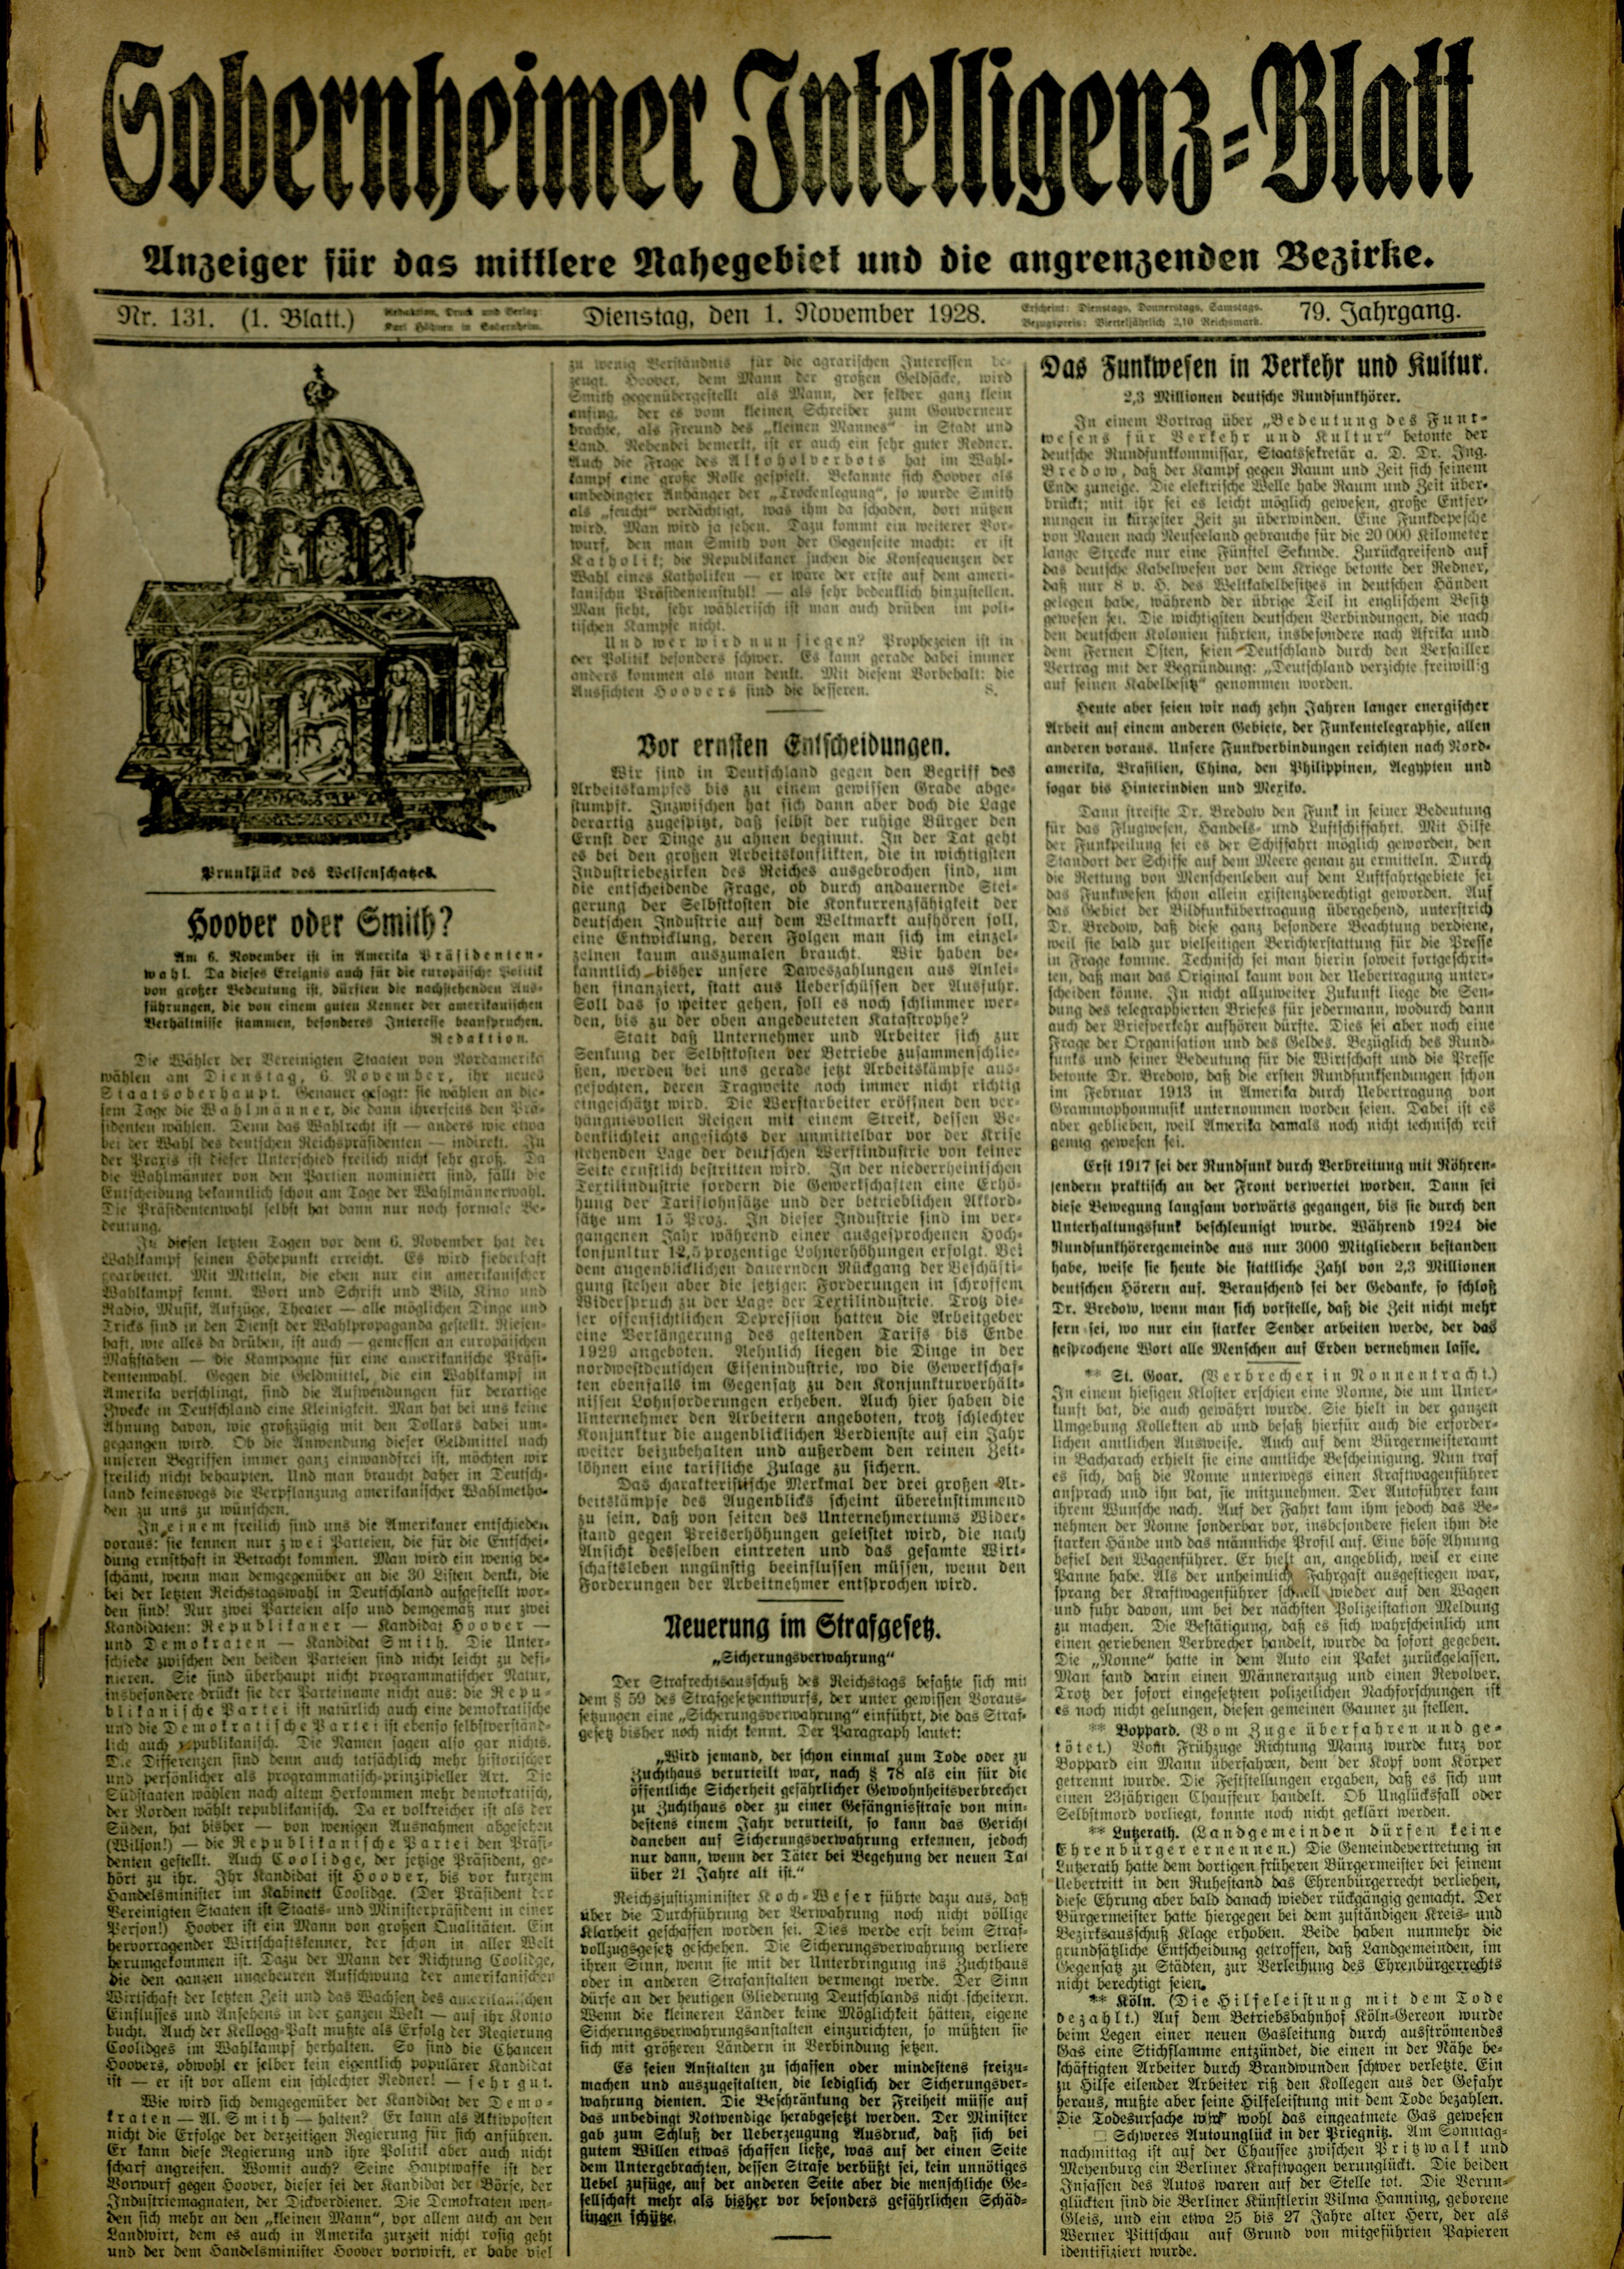 Zeitung: Sobernheimer Intelligenzblatt; November 1928, Jg. 79 Nr. 131 (Heimatmuseum Bad Sobernheim CC BY-NC-SA)